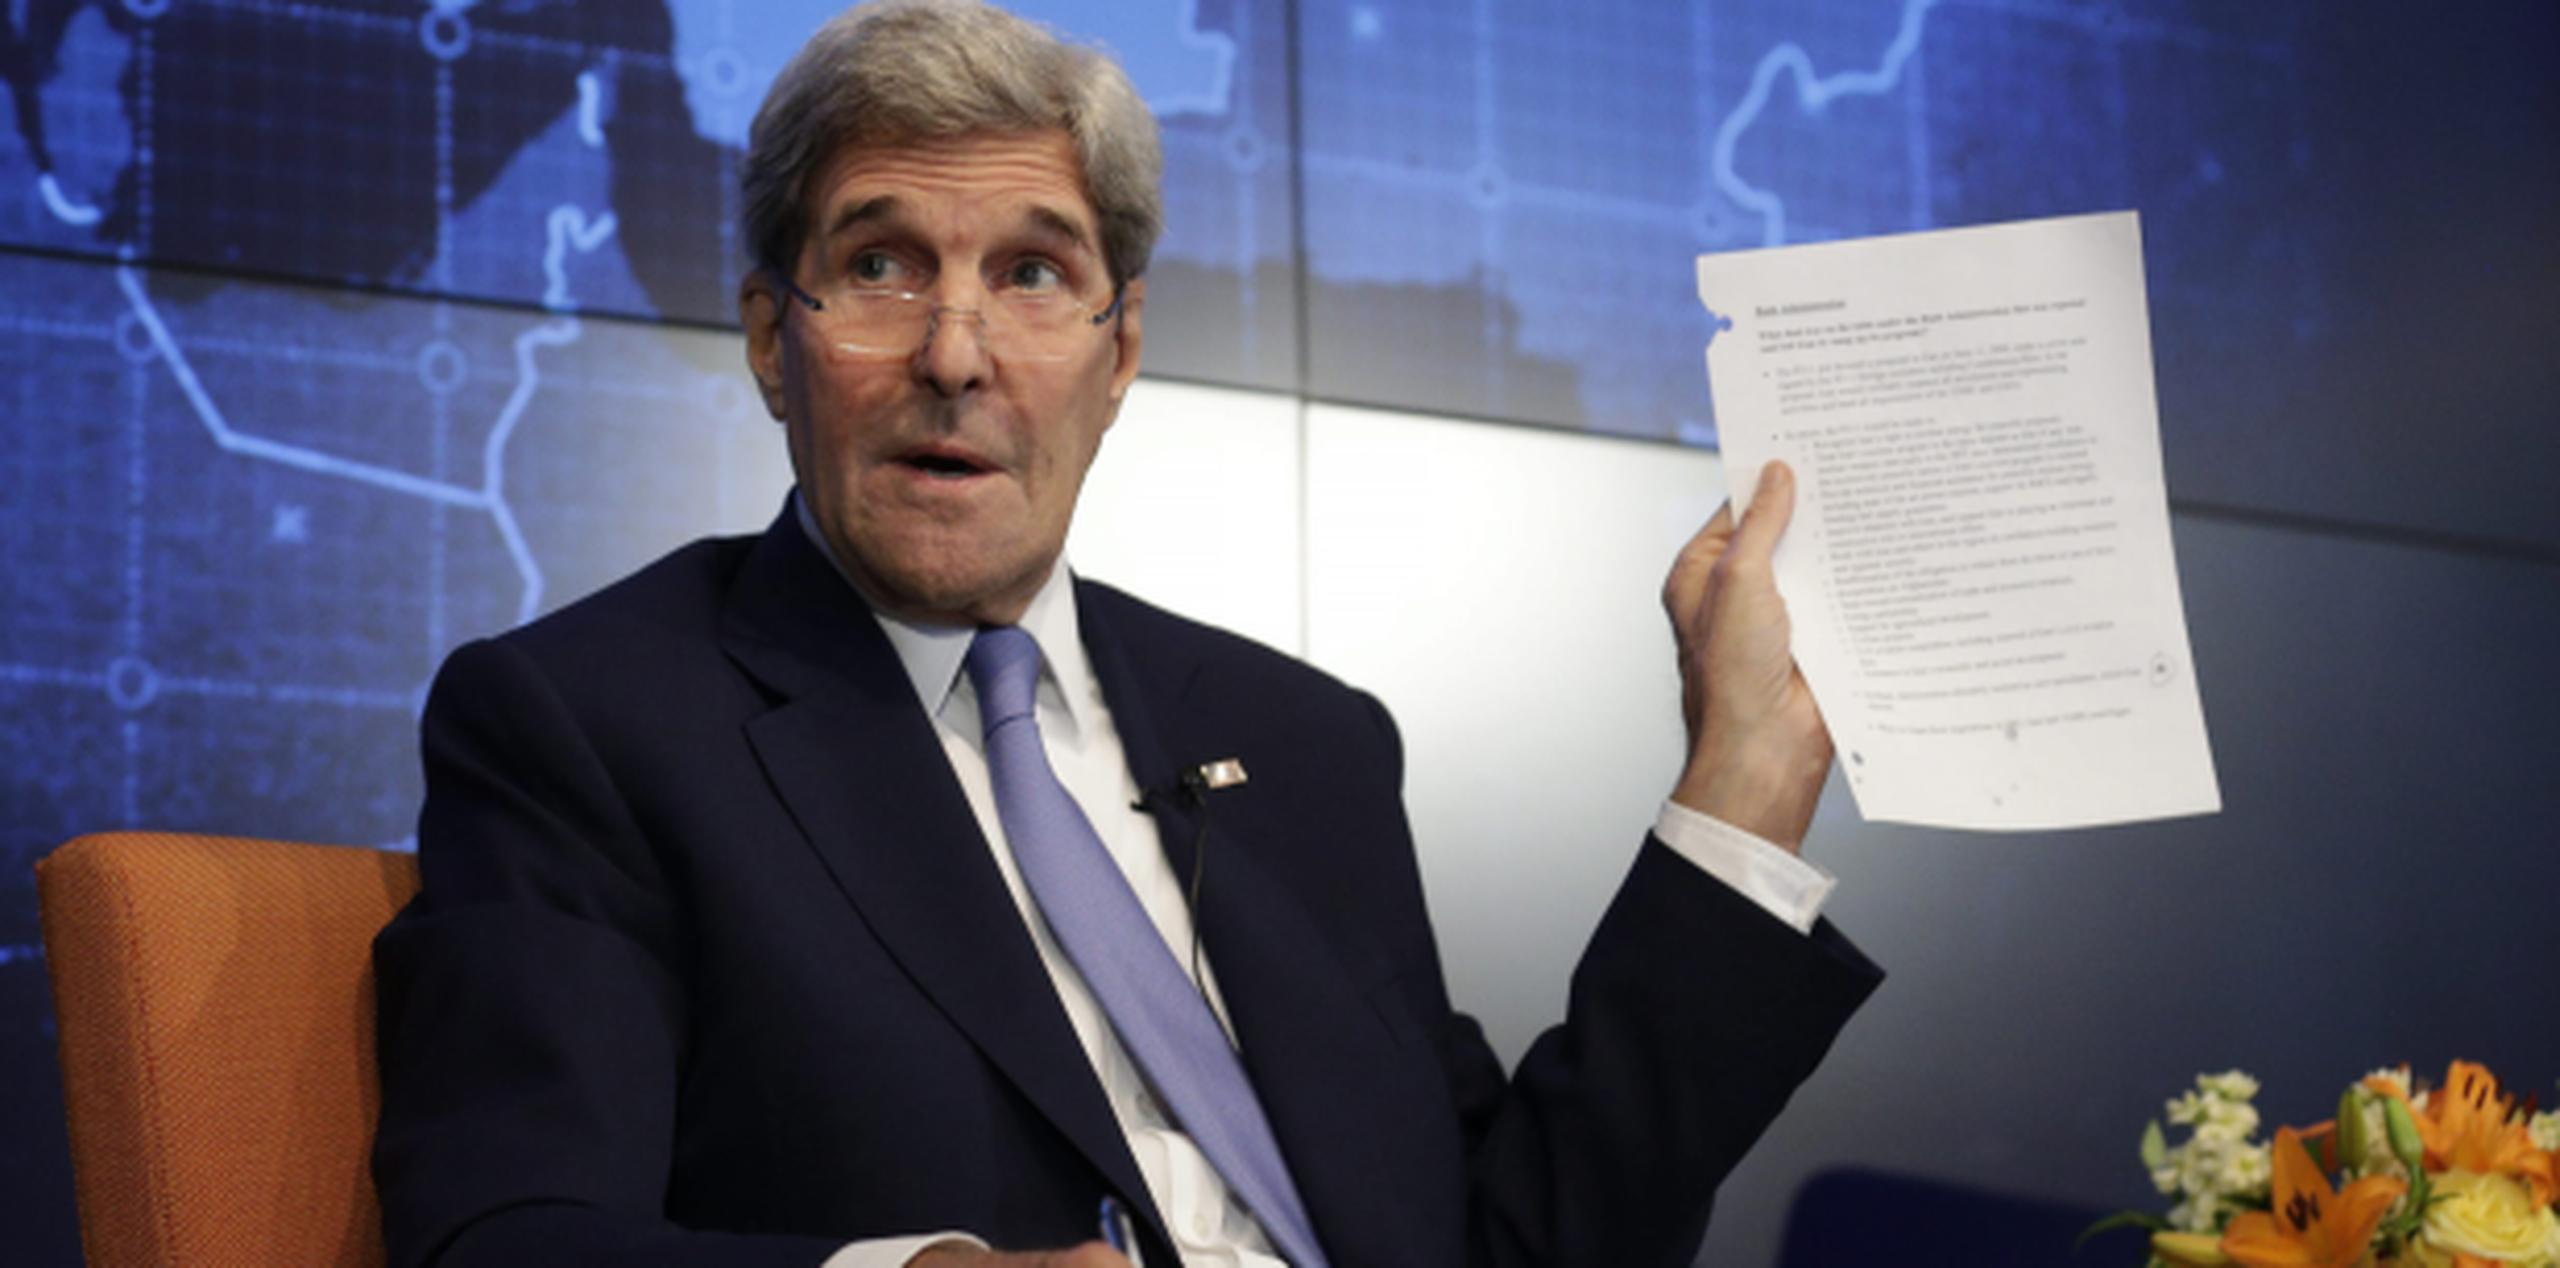 Kerry aseguró que los derechos humanos estarán "a la cabeza" de su agenda en la reunión con su homólogo cubano, Bruno Rodríguez. (AP)